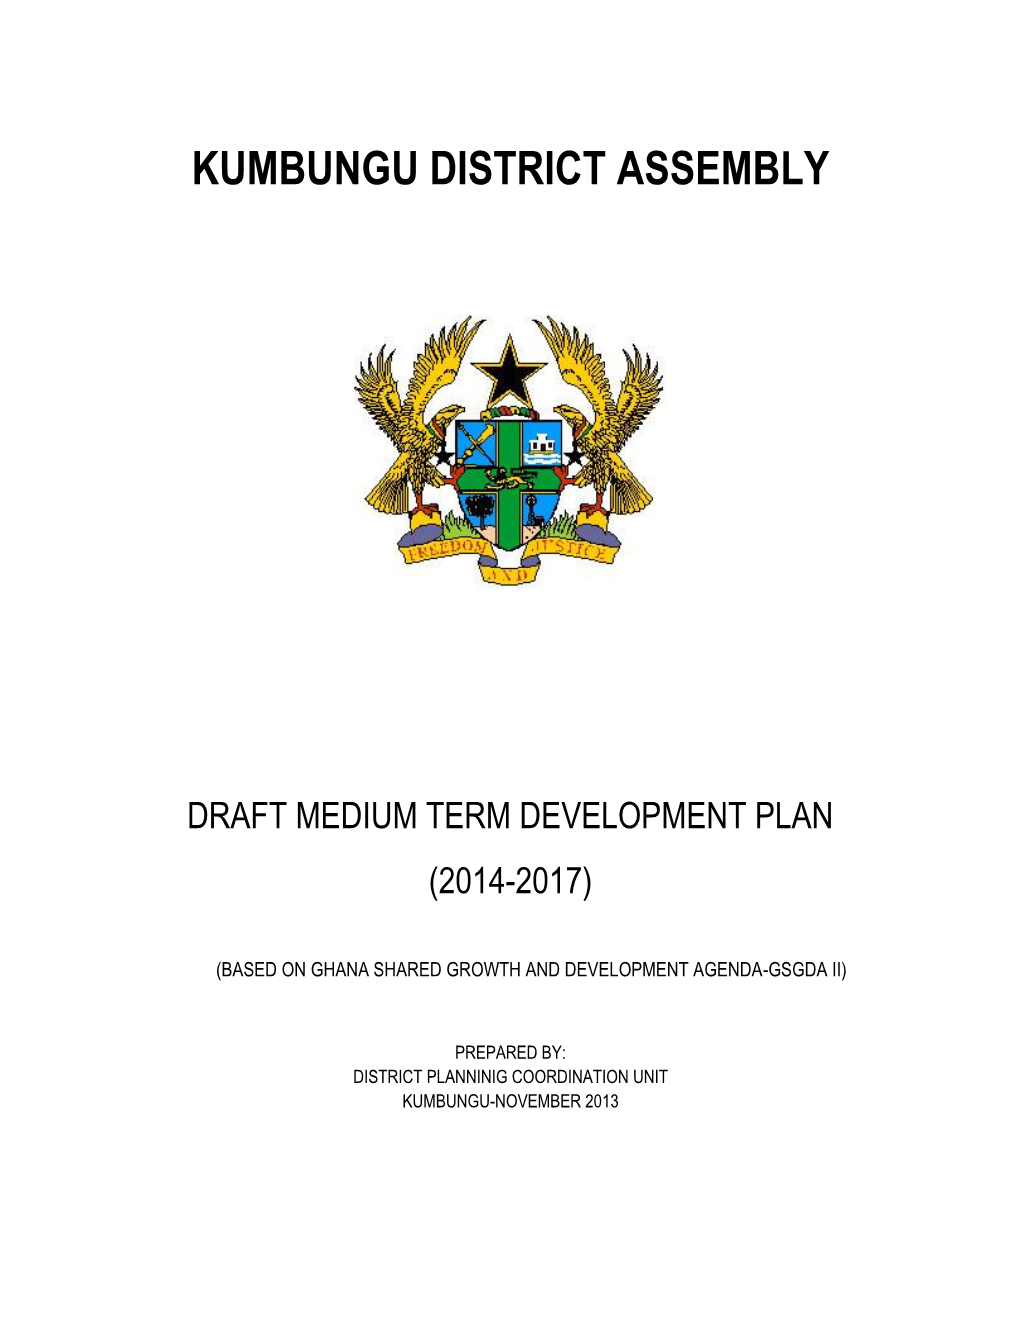 Kumbungu District Assembly